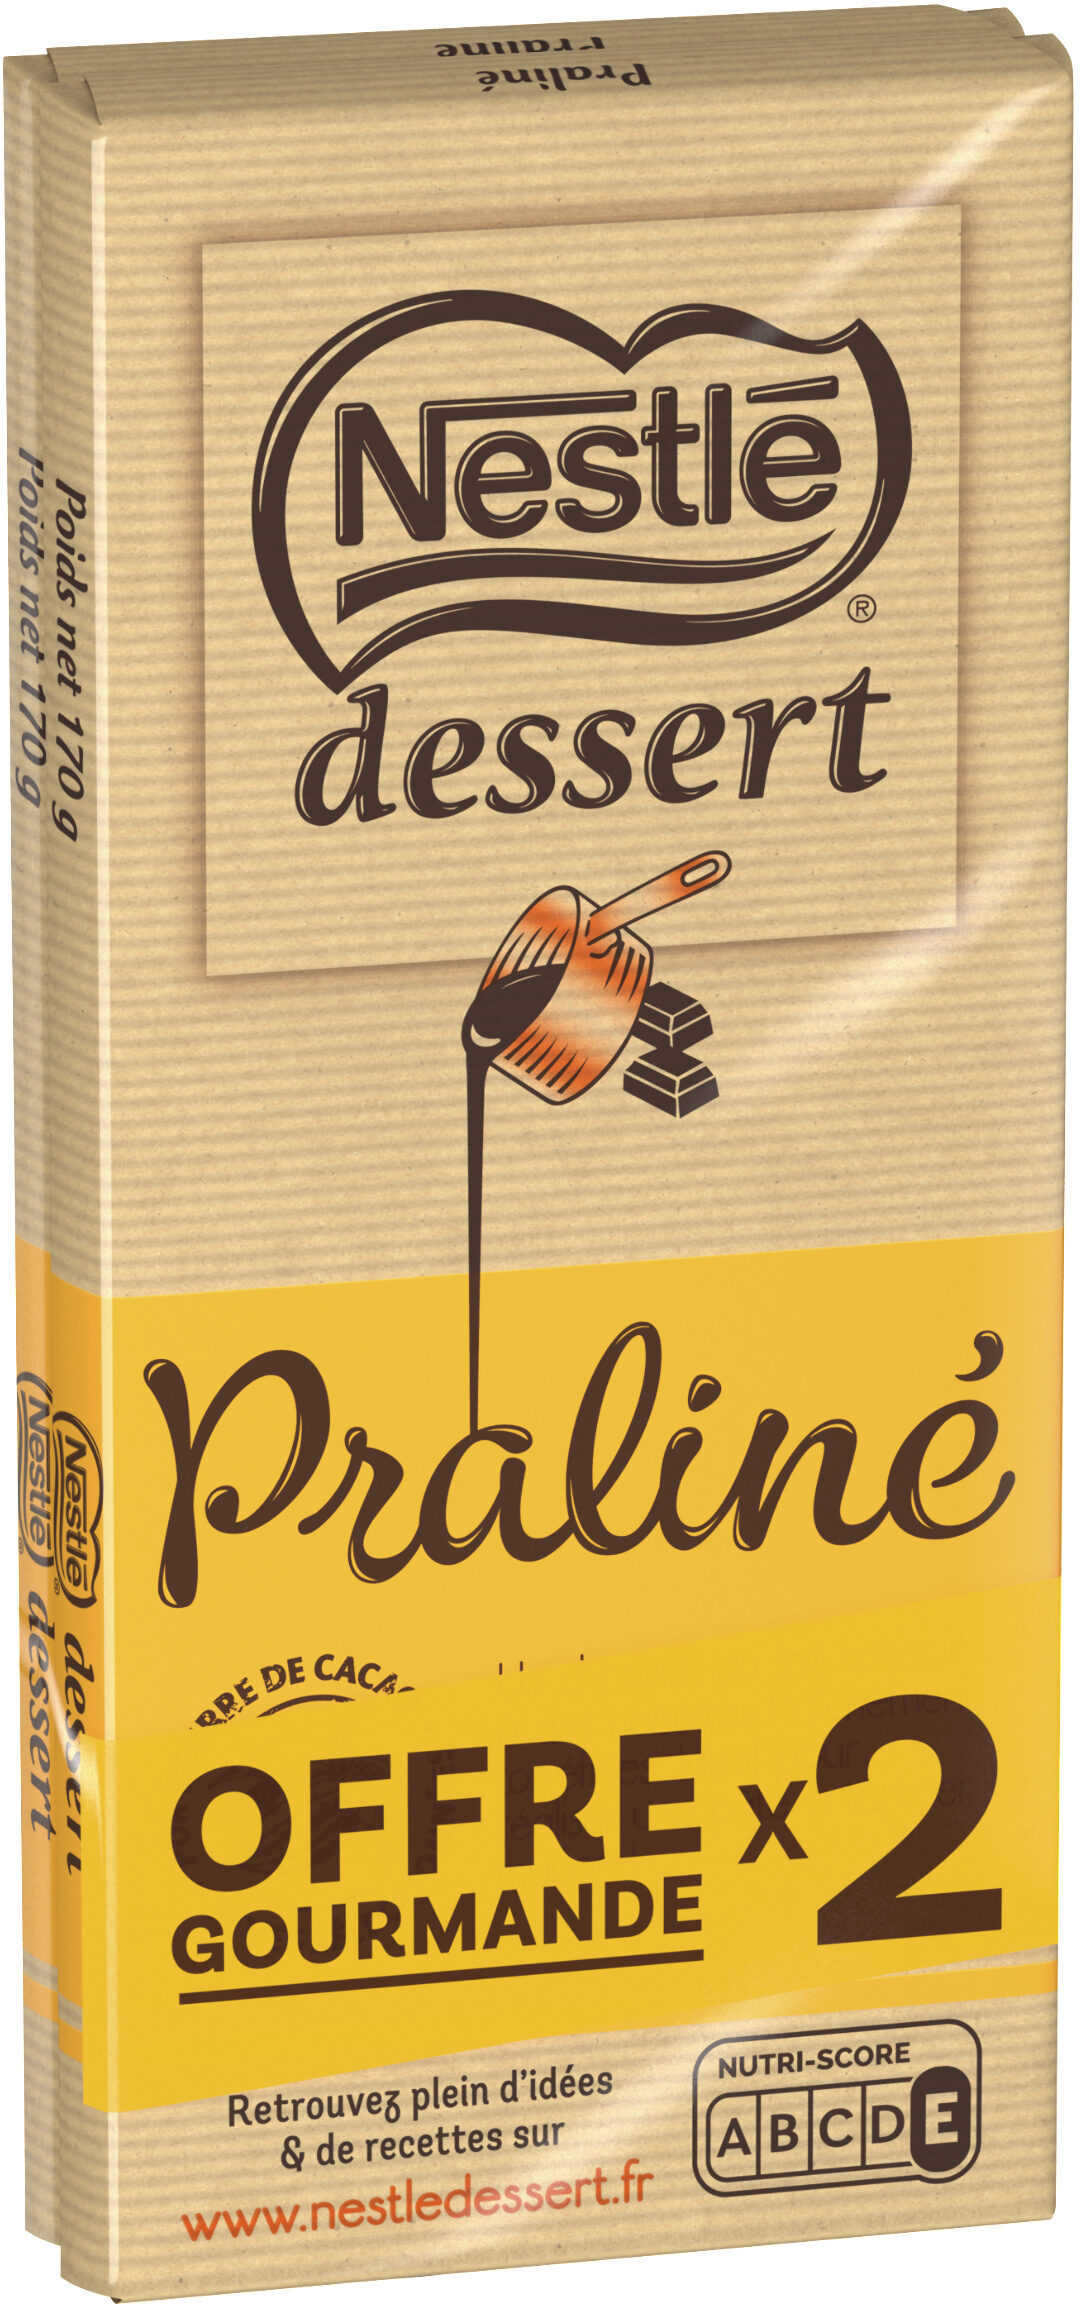 NESTLE DESSERT Praliné 2 x 170g - Produkt - fr